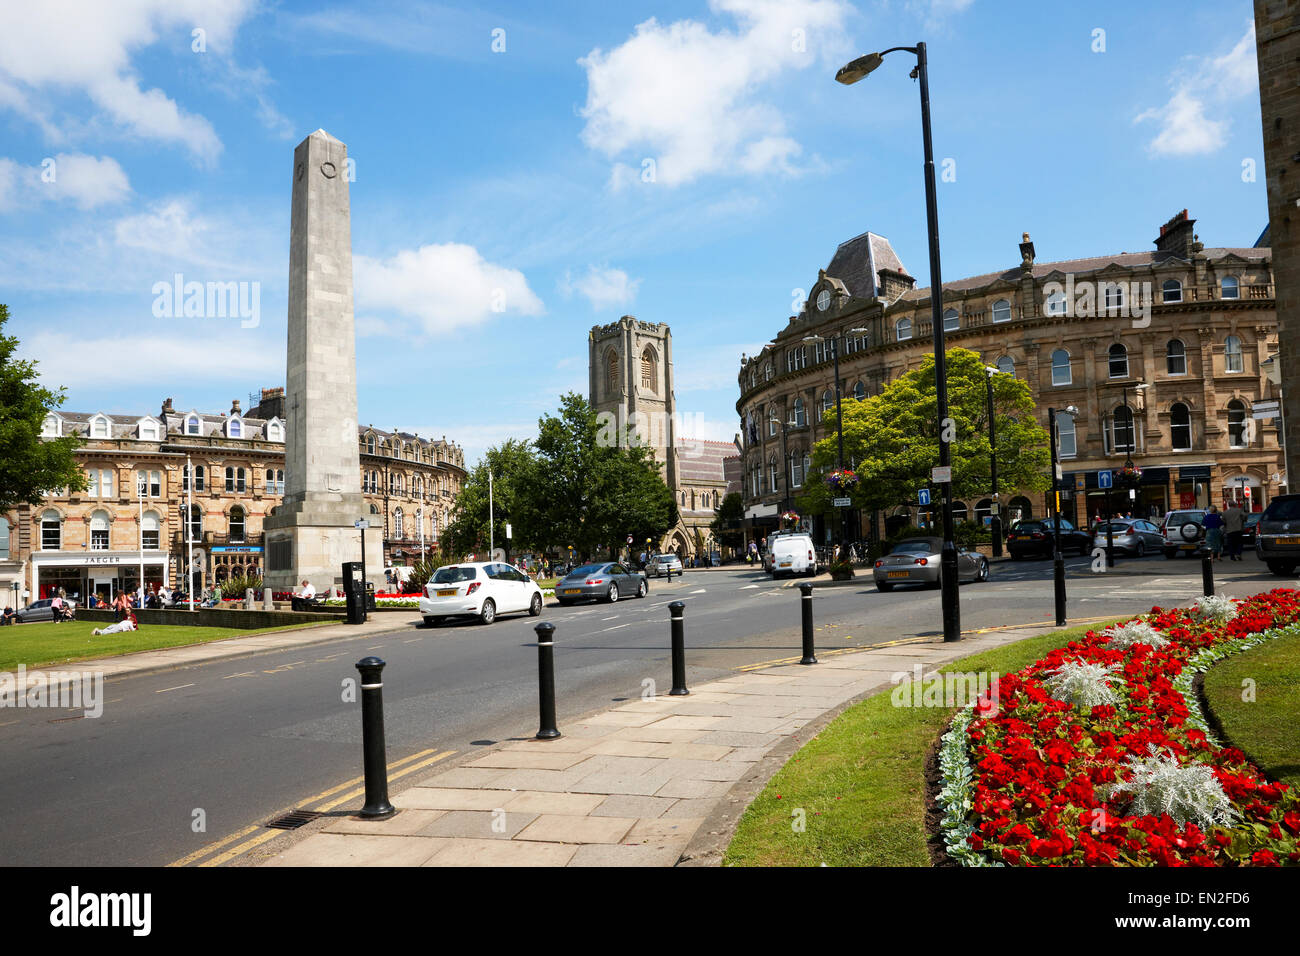 El centro de la ciudad de Harrogate, mirando hacia el cenotafio. North Yorkshire, Reino Unido Foto de stock